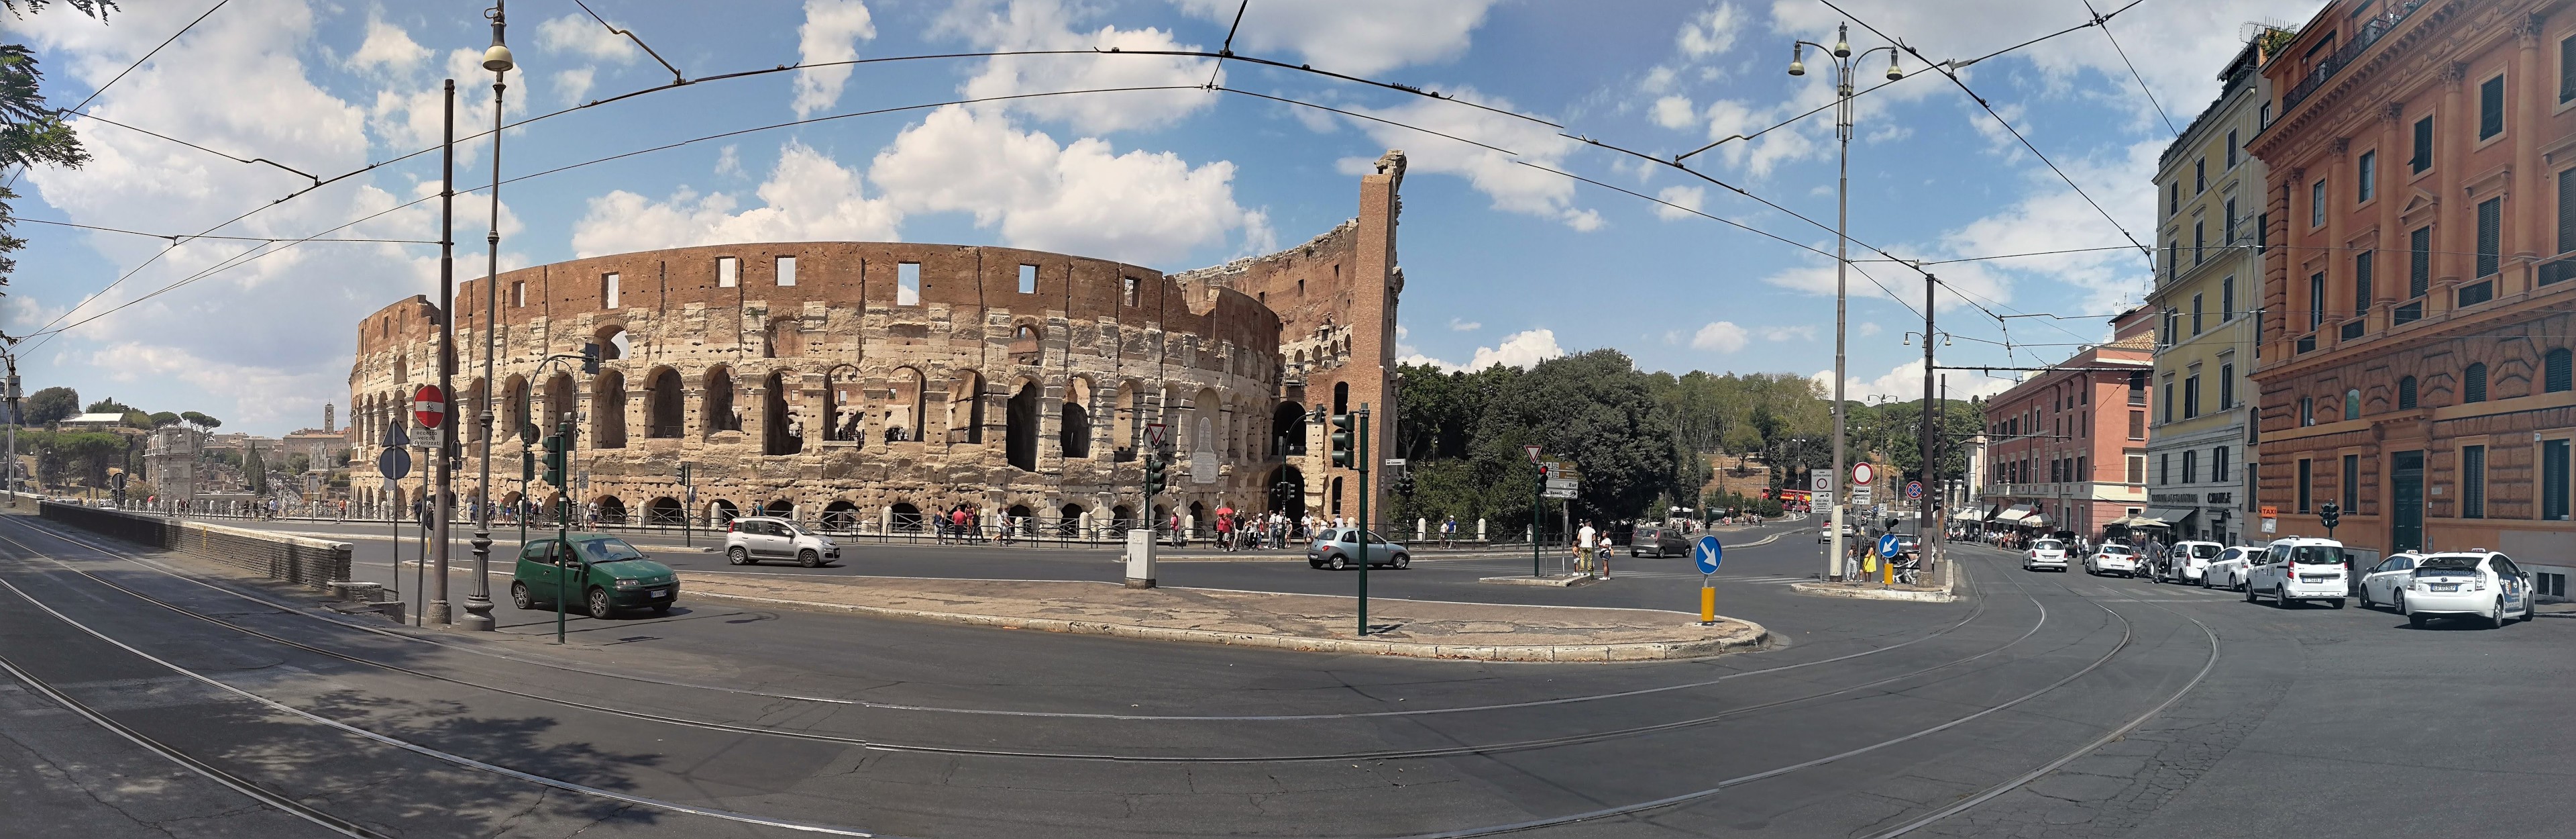 Colosseum1 PANO